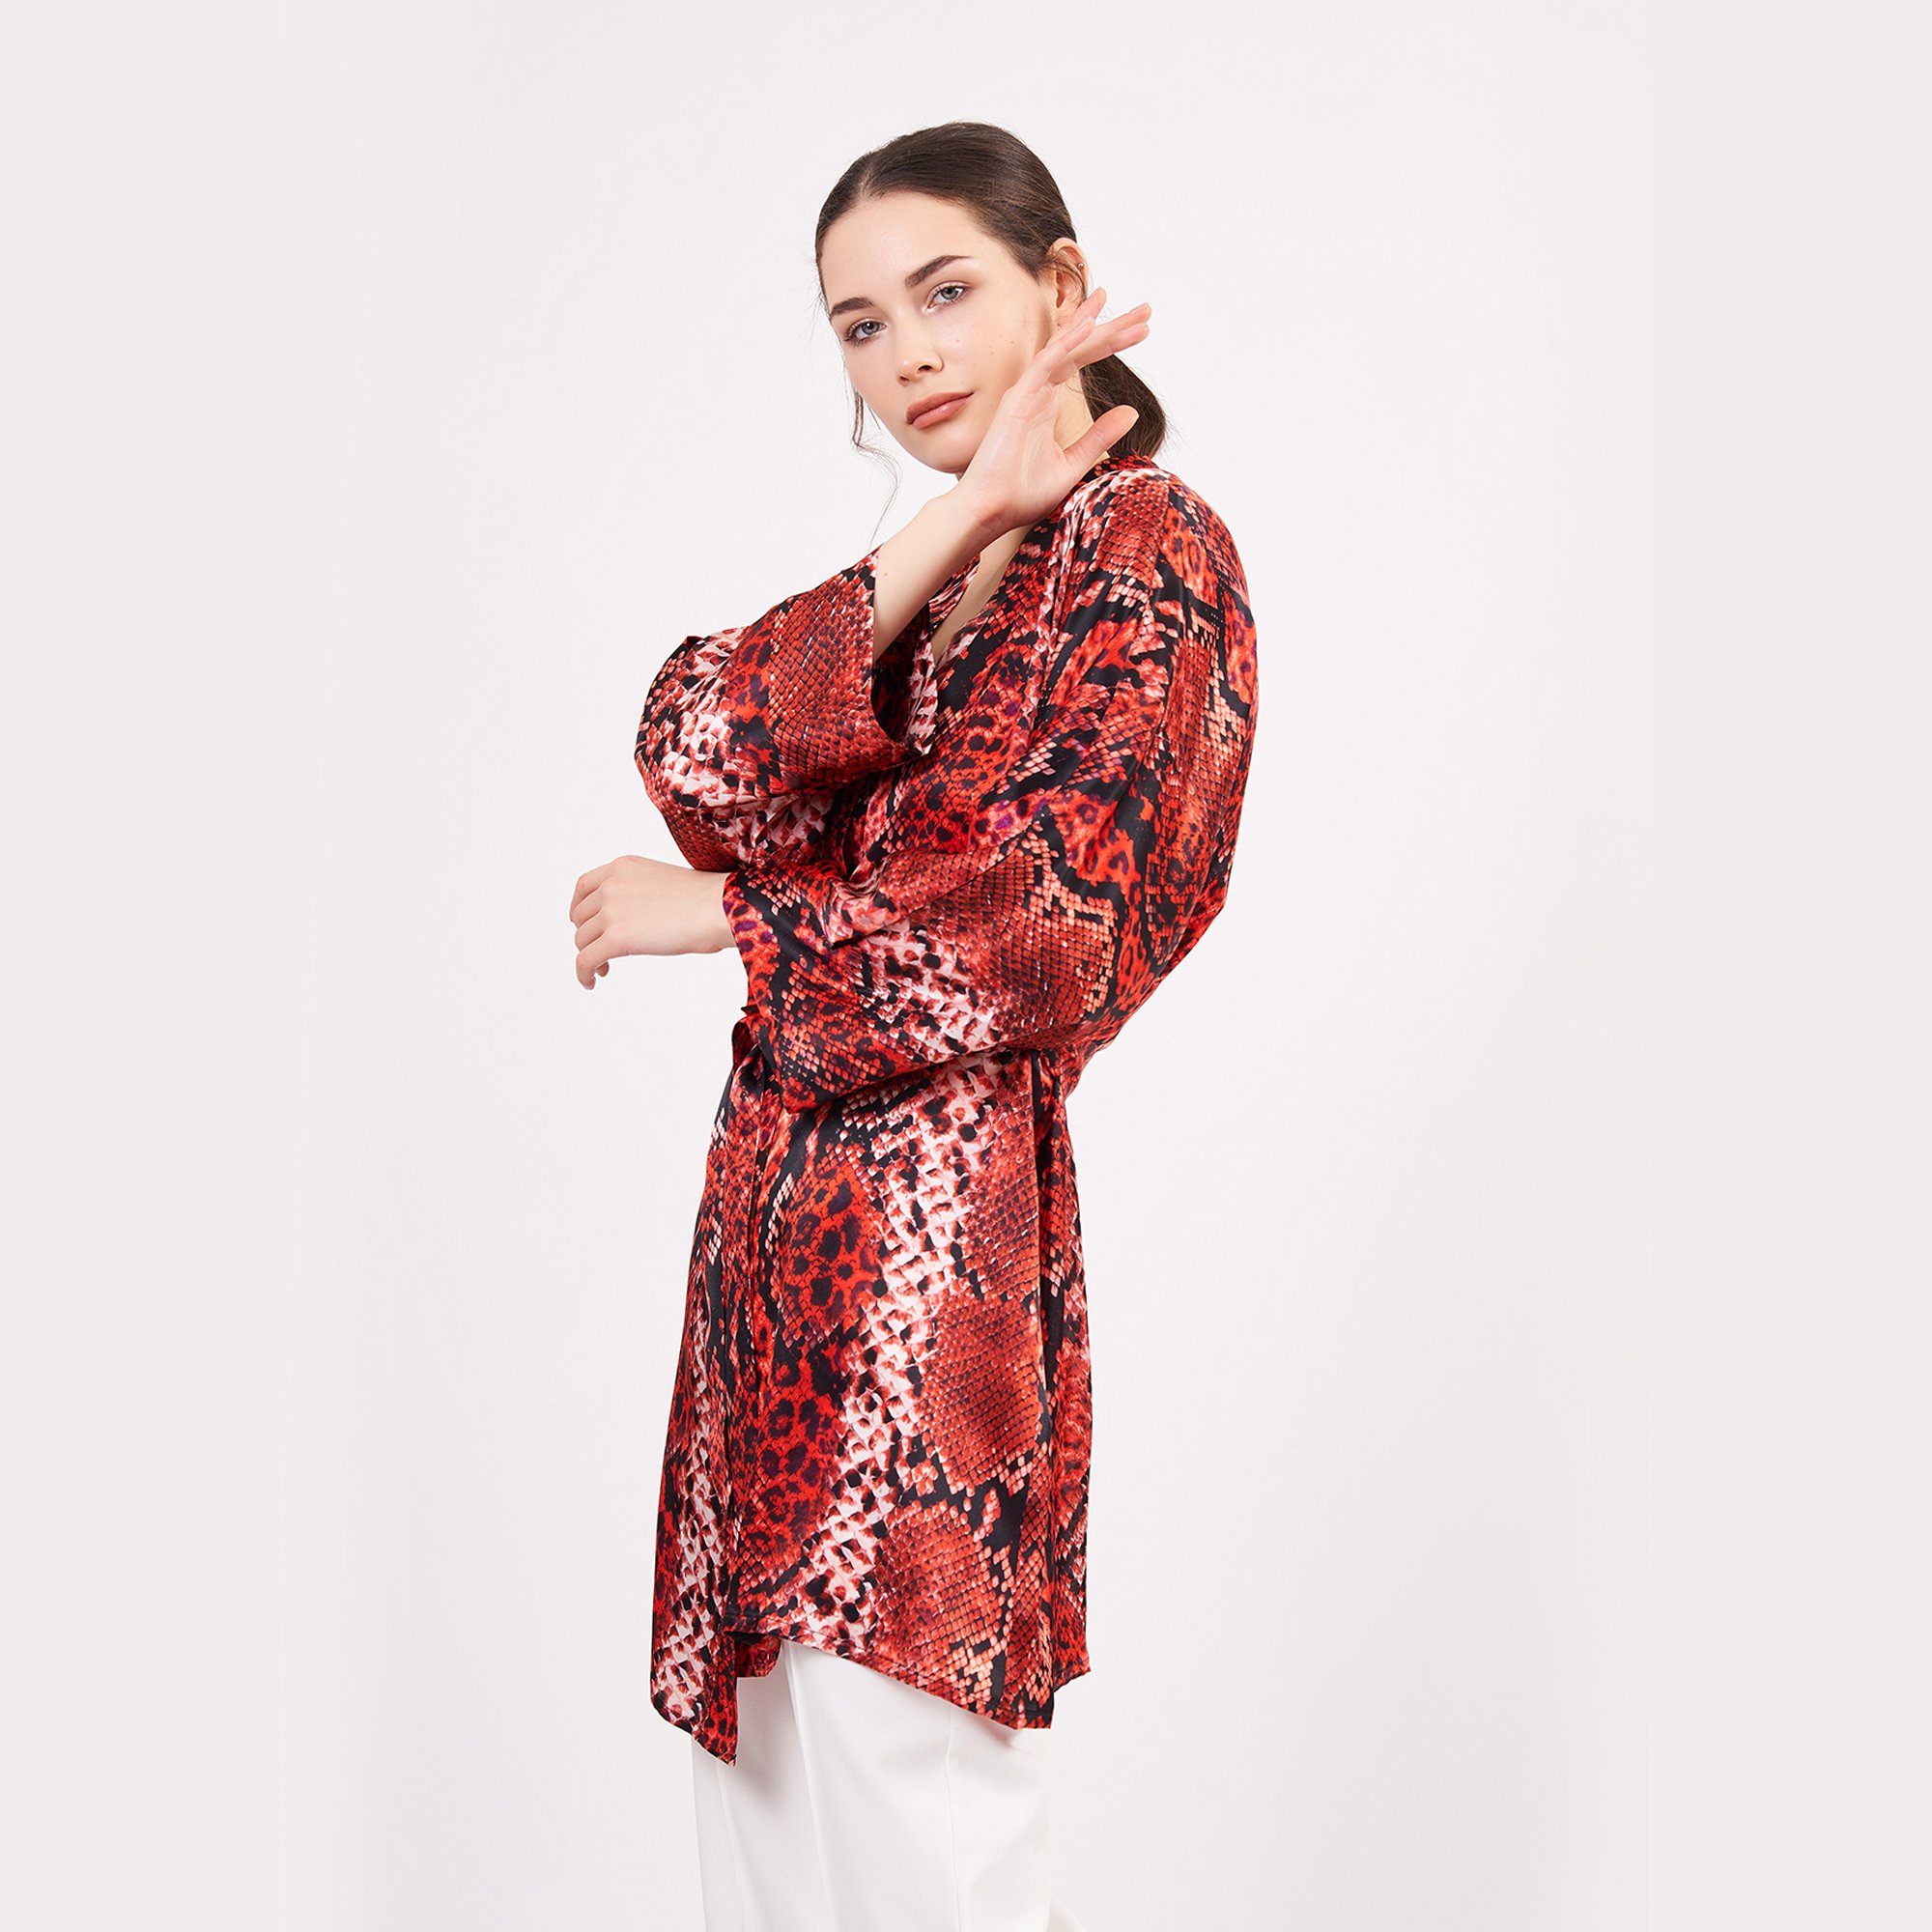 Saf İpek Kısa Kimono Kaftan | Yılan Derisi Desen Kırmızı | Nomads Felt